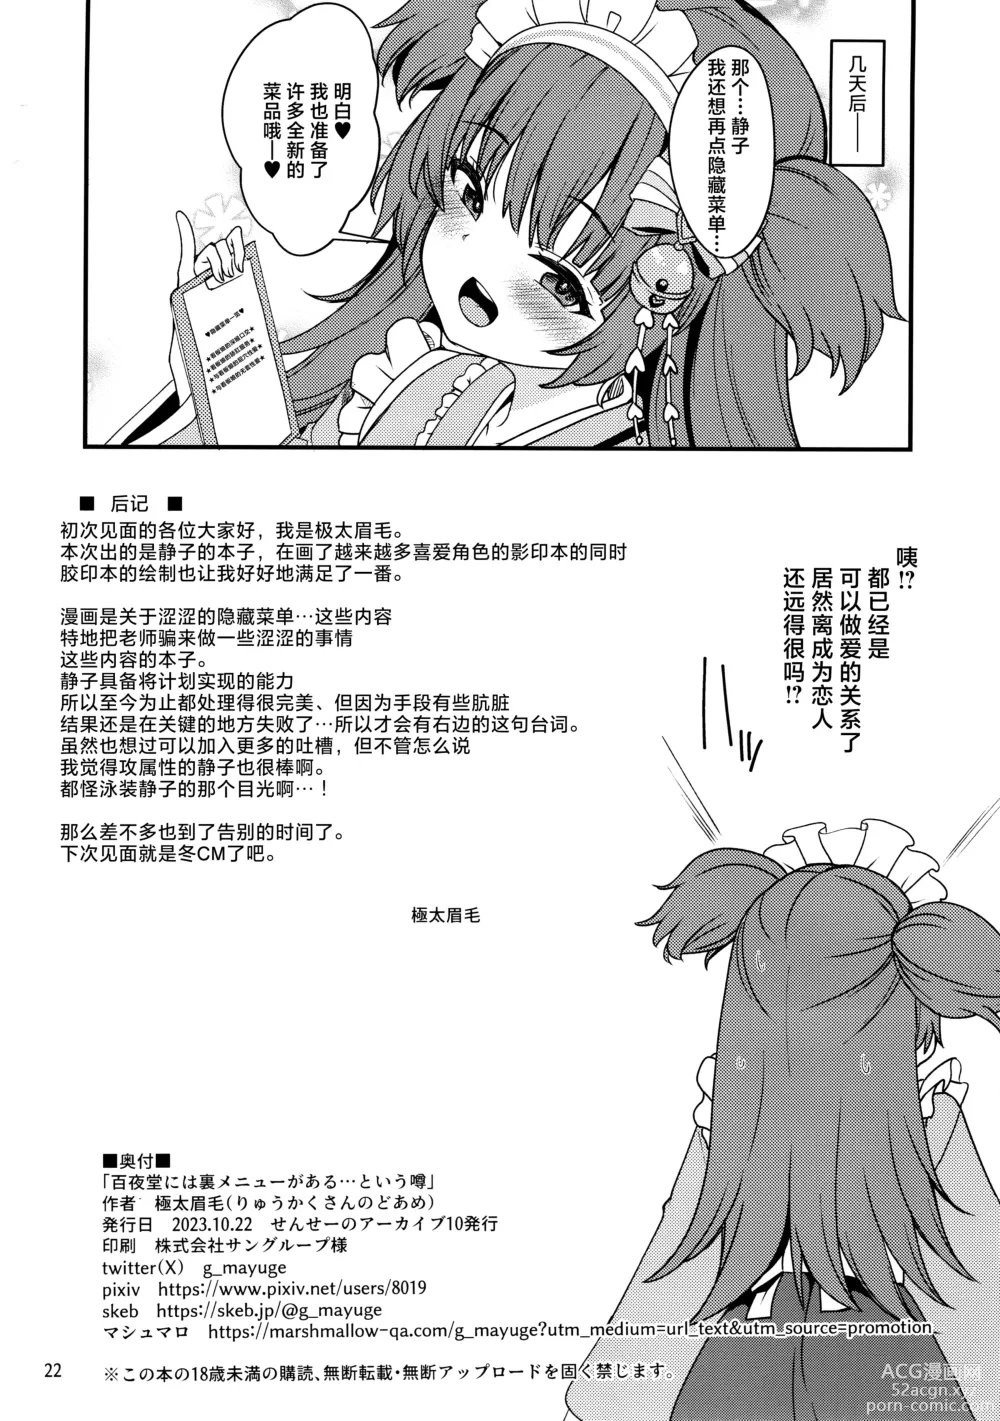 Page 22 of doujinshi Momoyo-dou ni wa Ura Menu ga Aru.